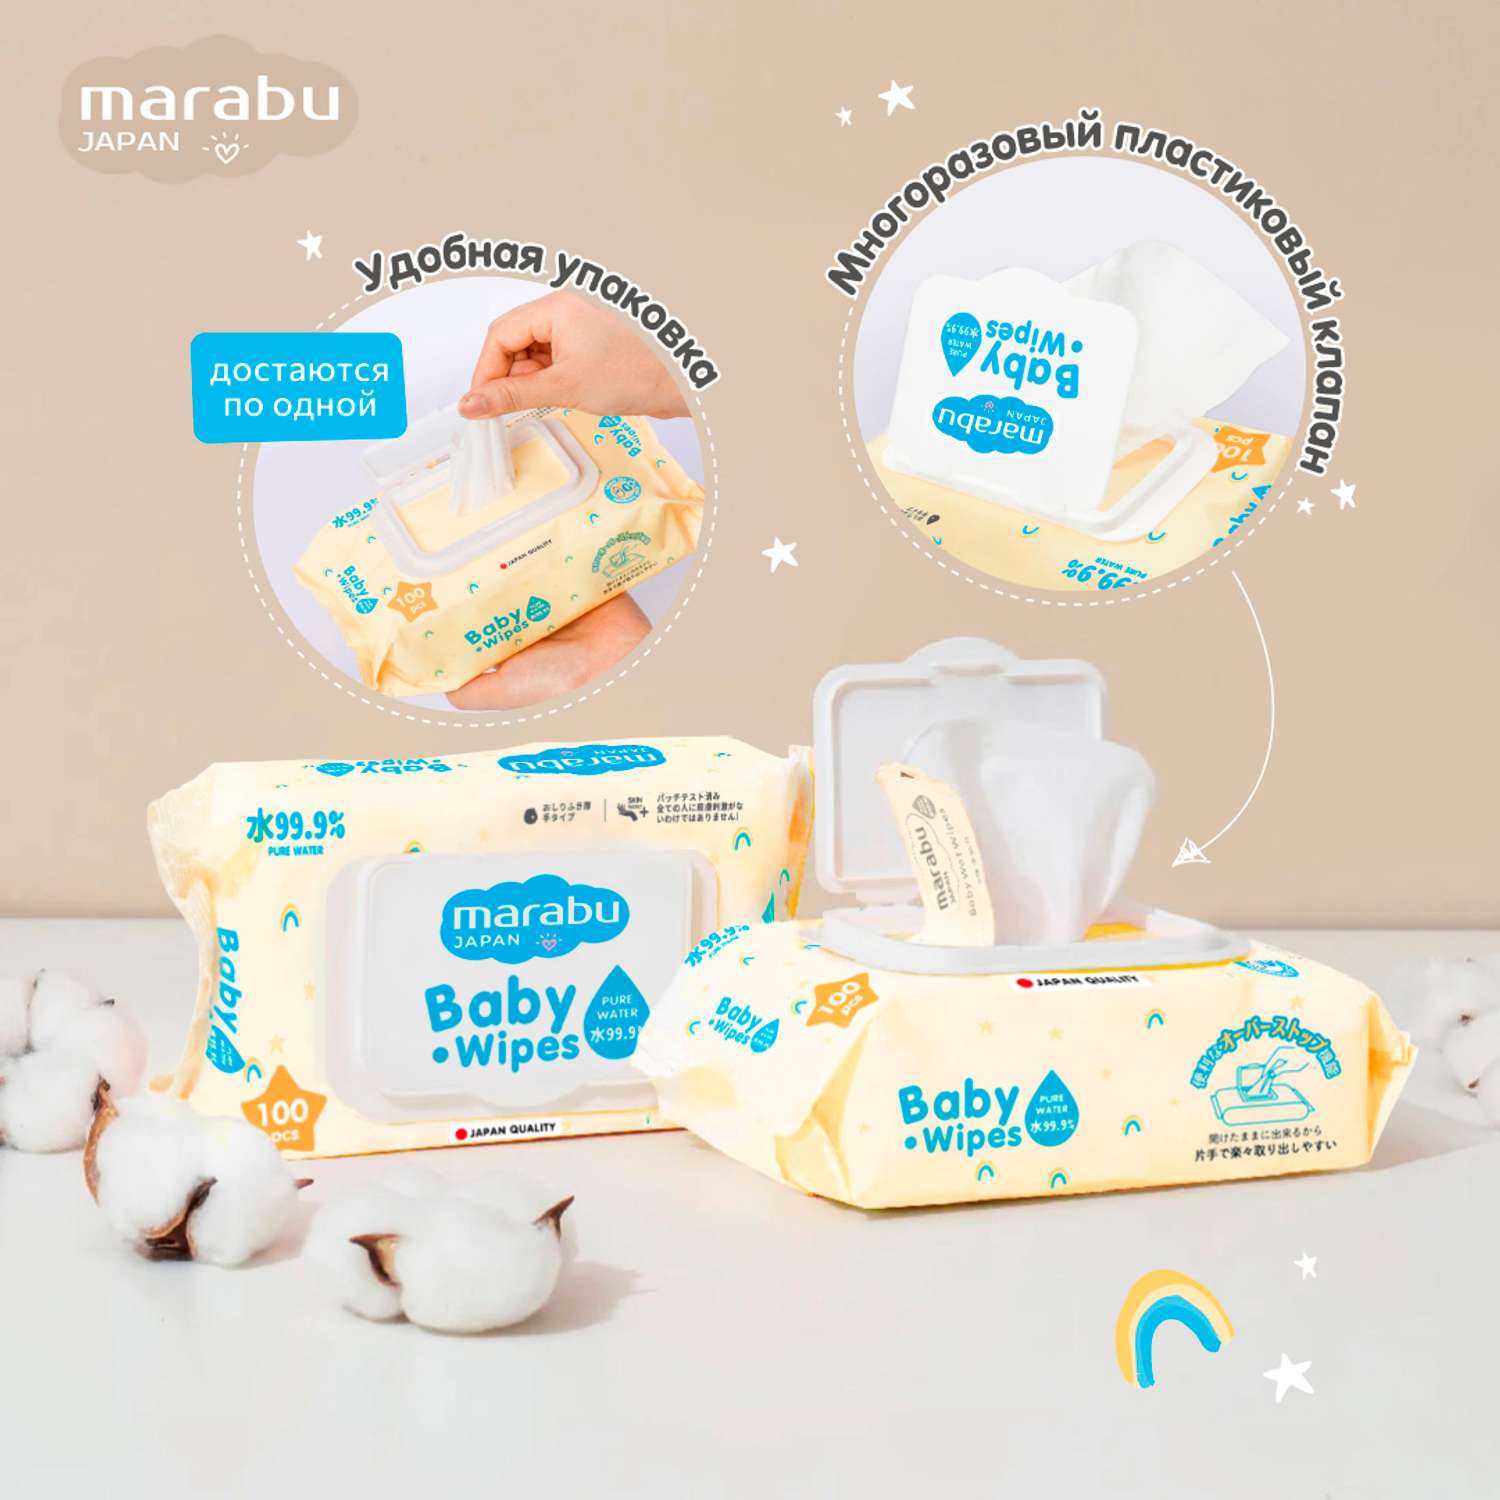 Влажные салфетки для детей MARABU набор из 3 упаковок по 100 шт - фото 5